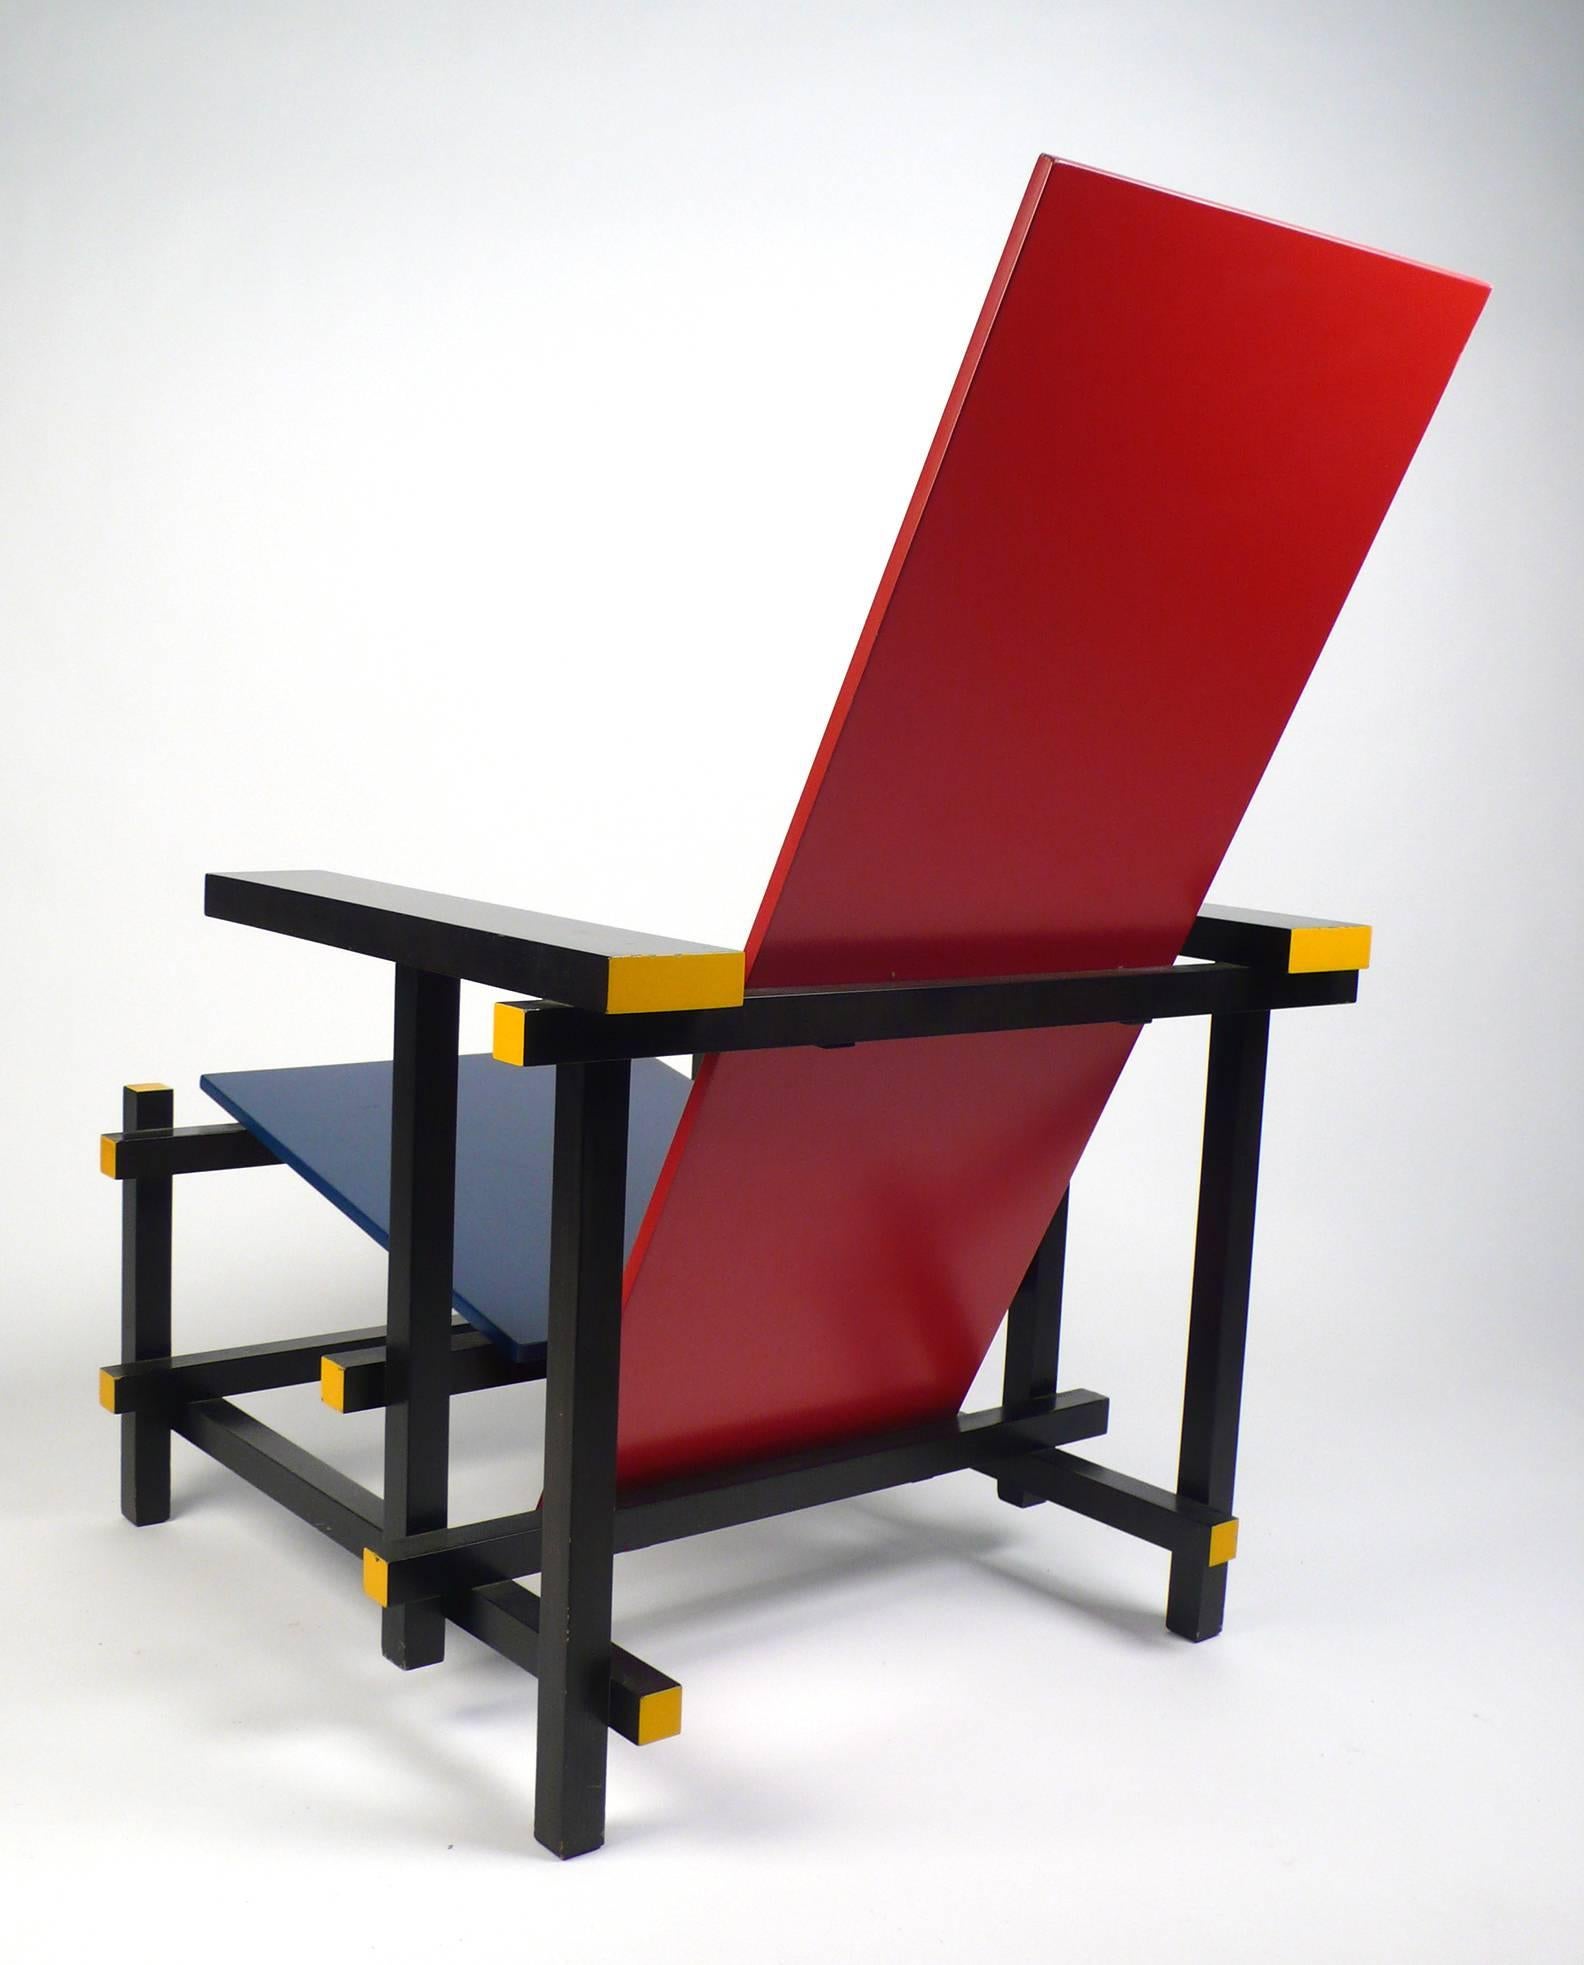 Vintage-Stuhl Gerrit Rietveld, hergestellt unter Lizenz von Cassina (Bauhaus)